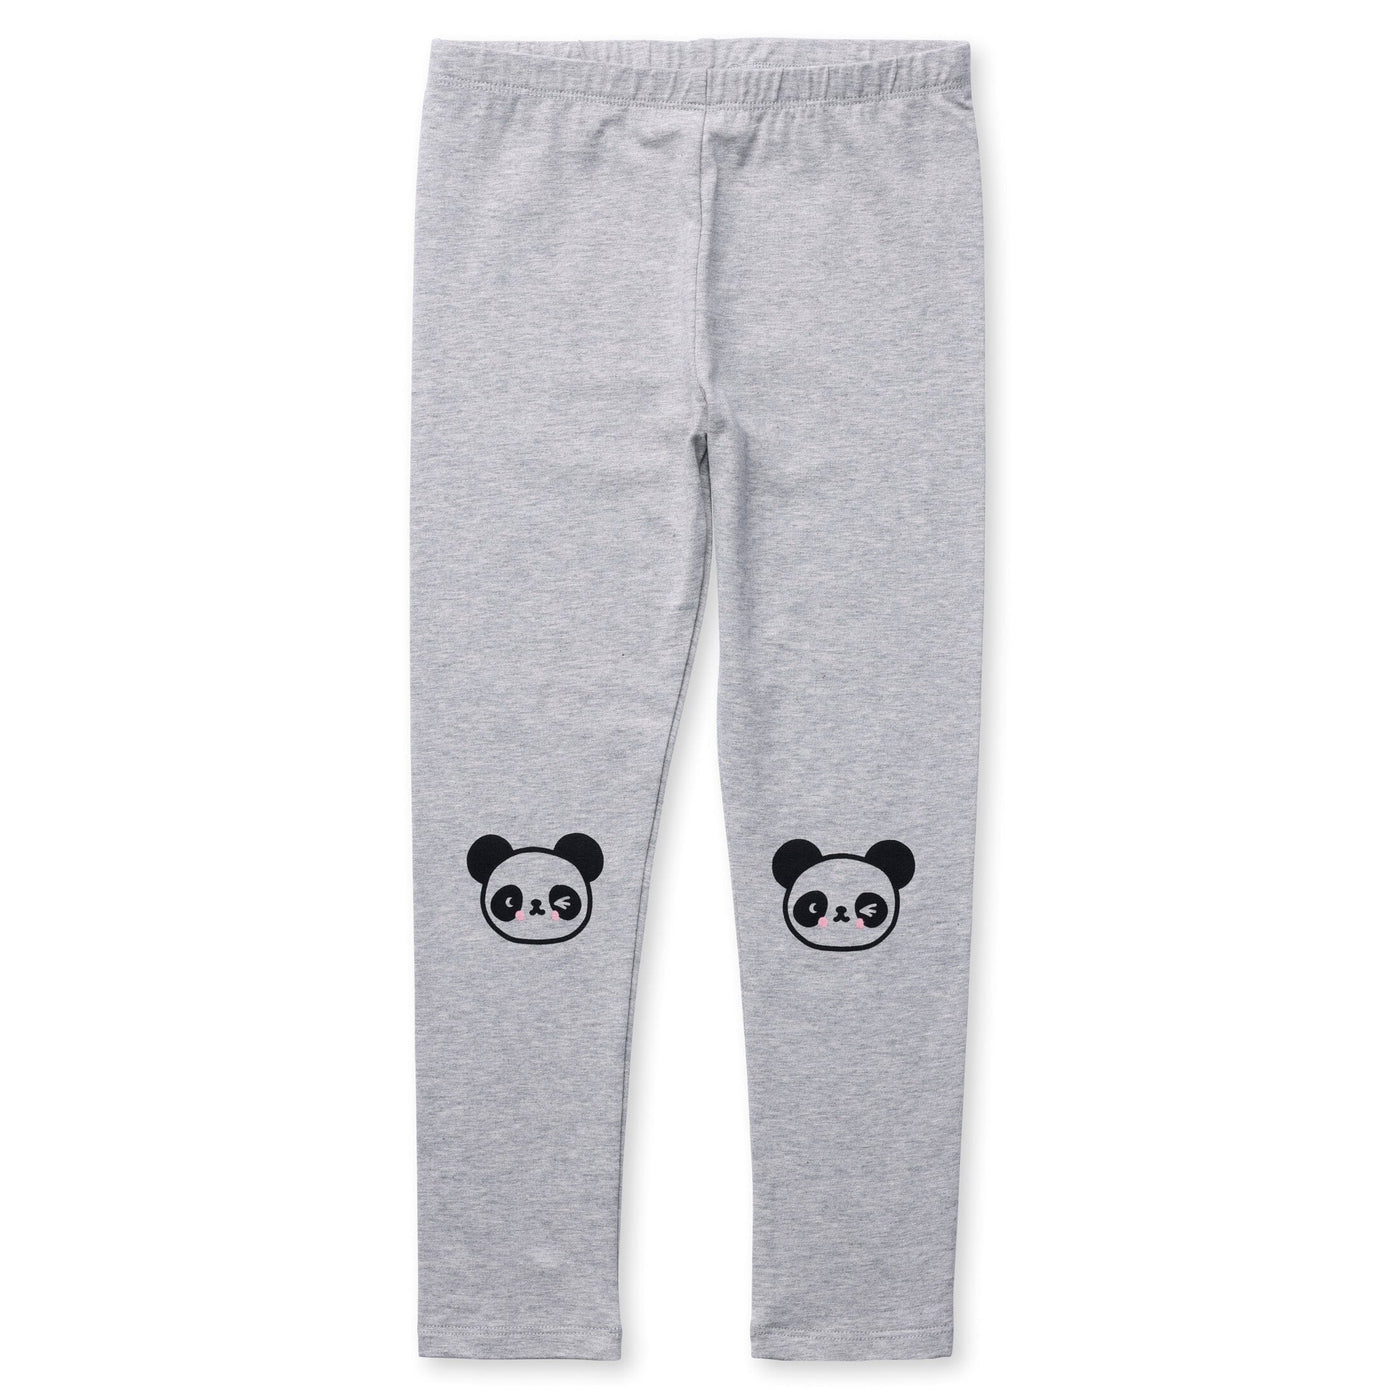 Minti Panda Tights - Grey Marle Leggings Minti 